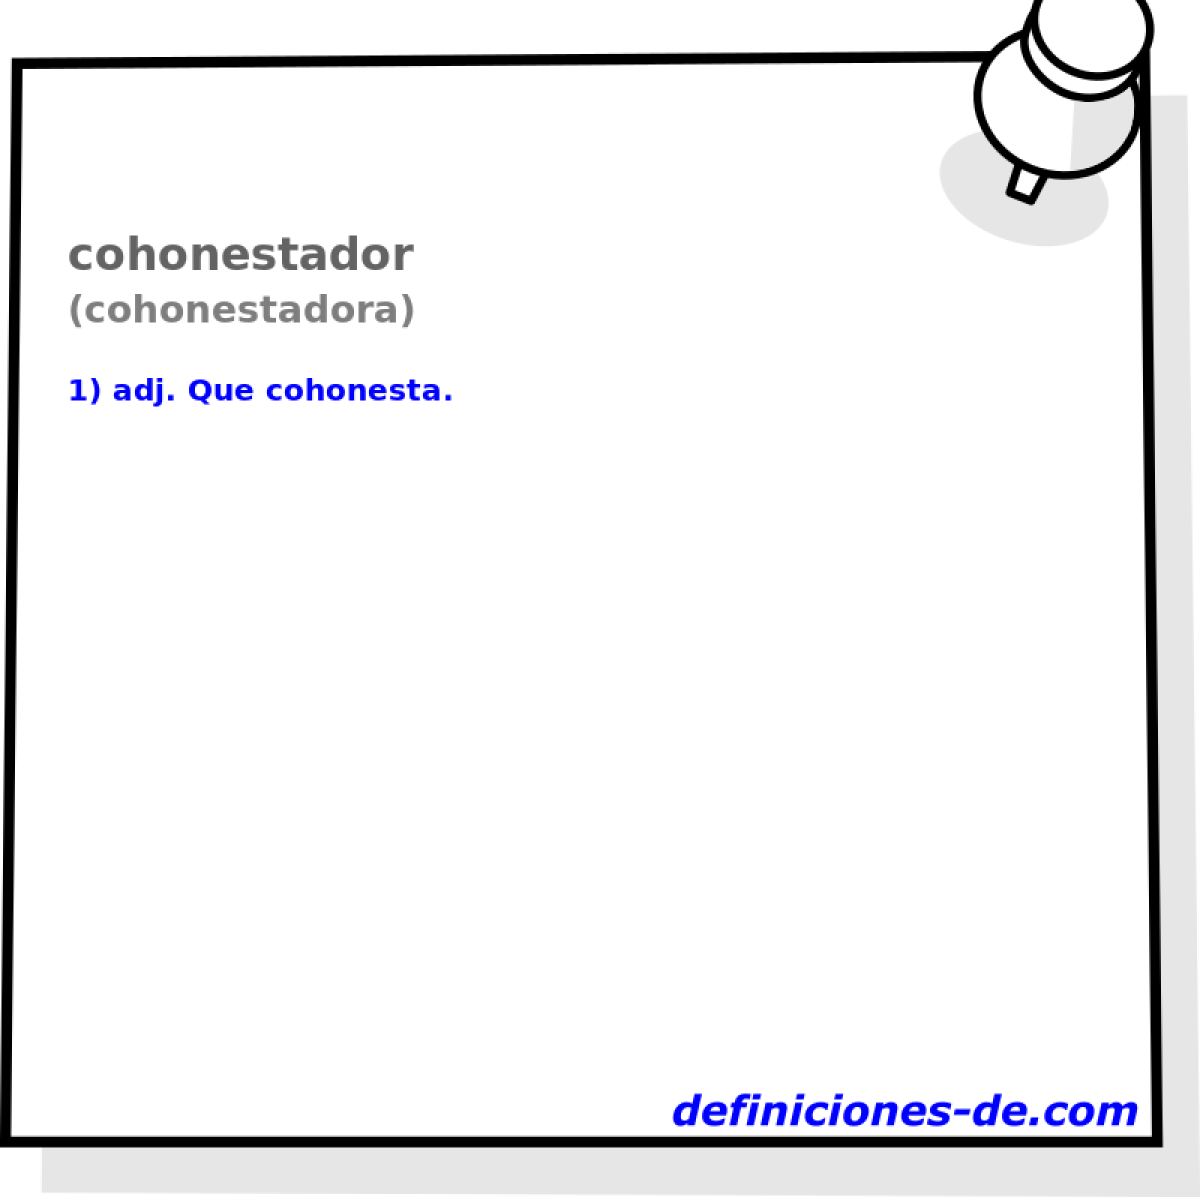 cohonestador (cohonestadora)